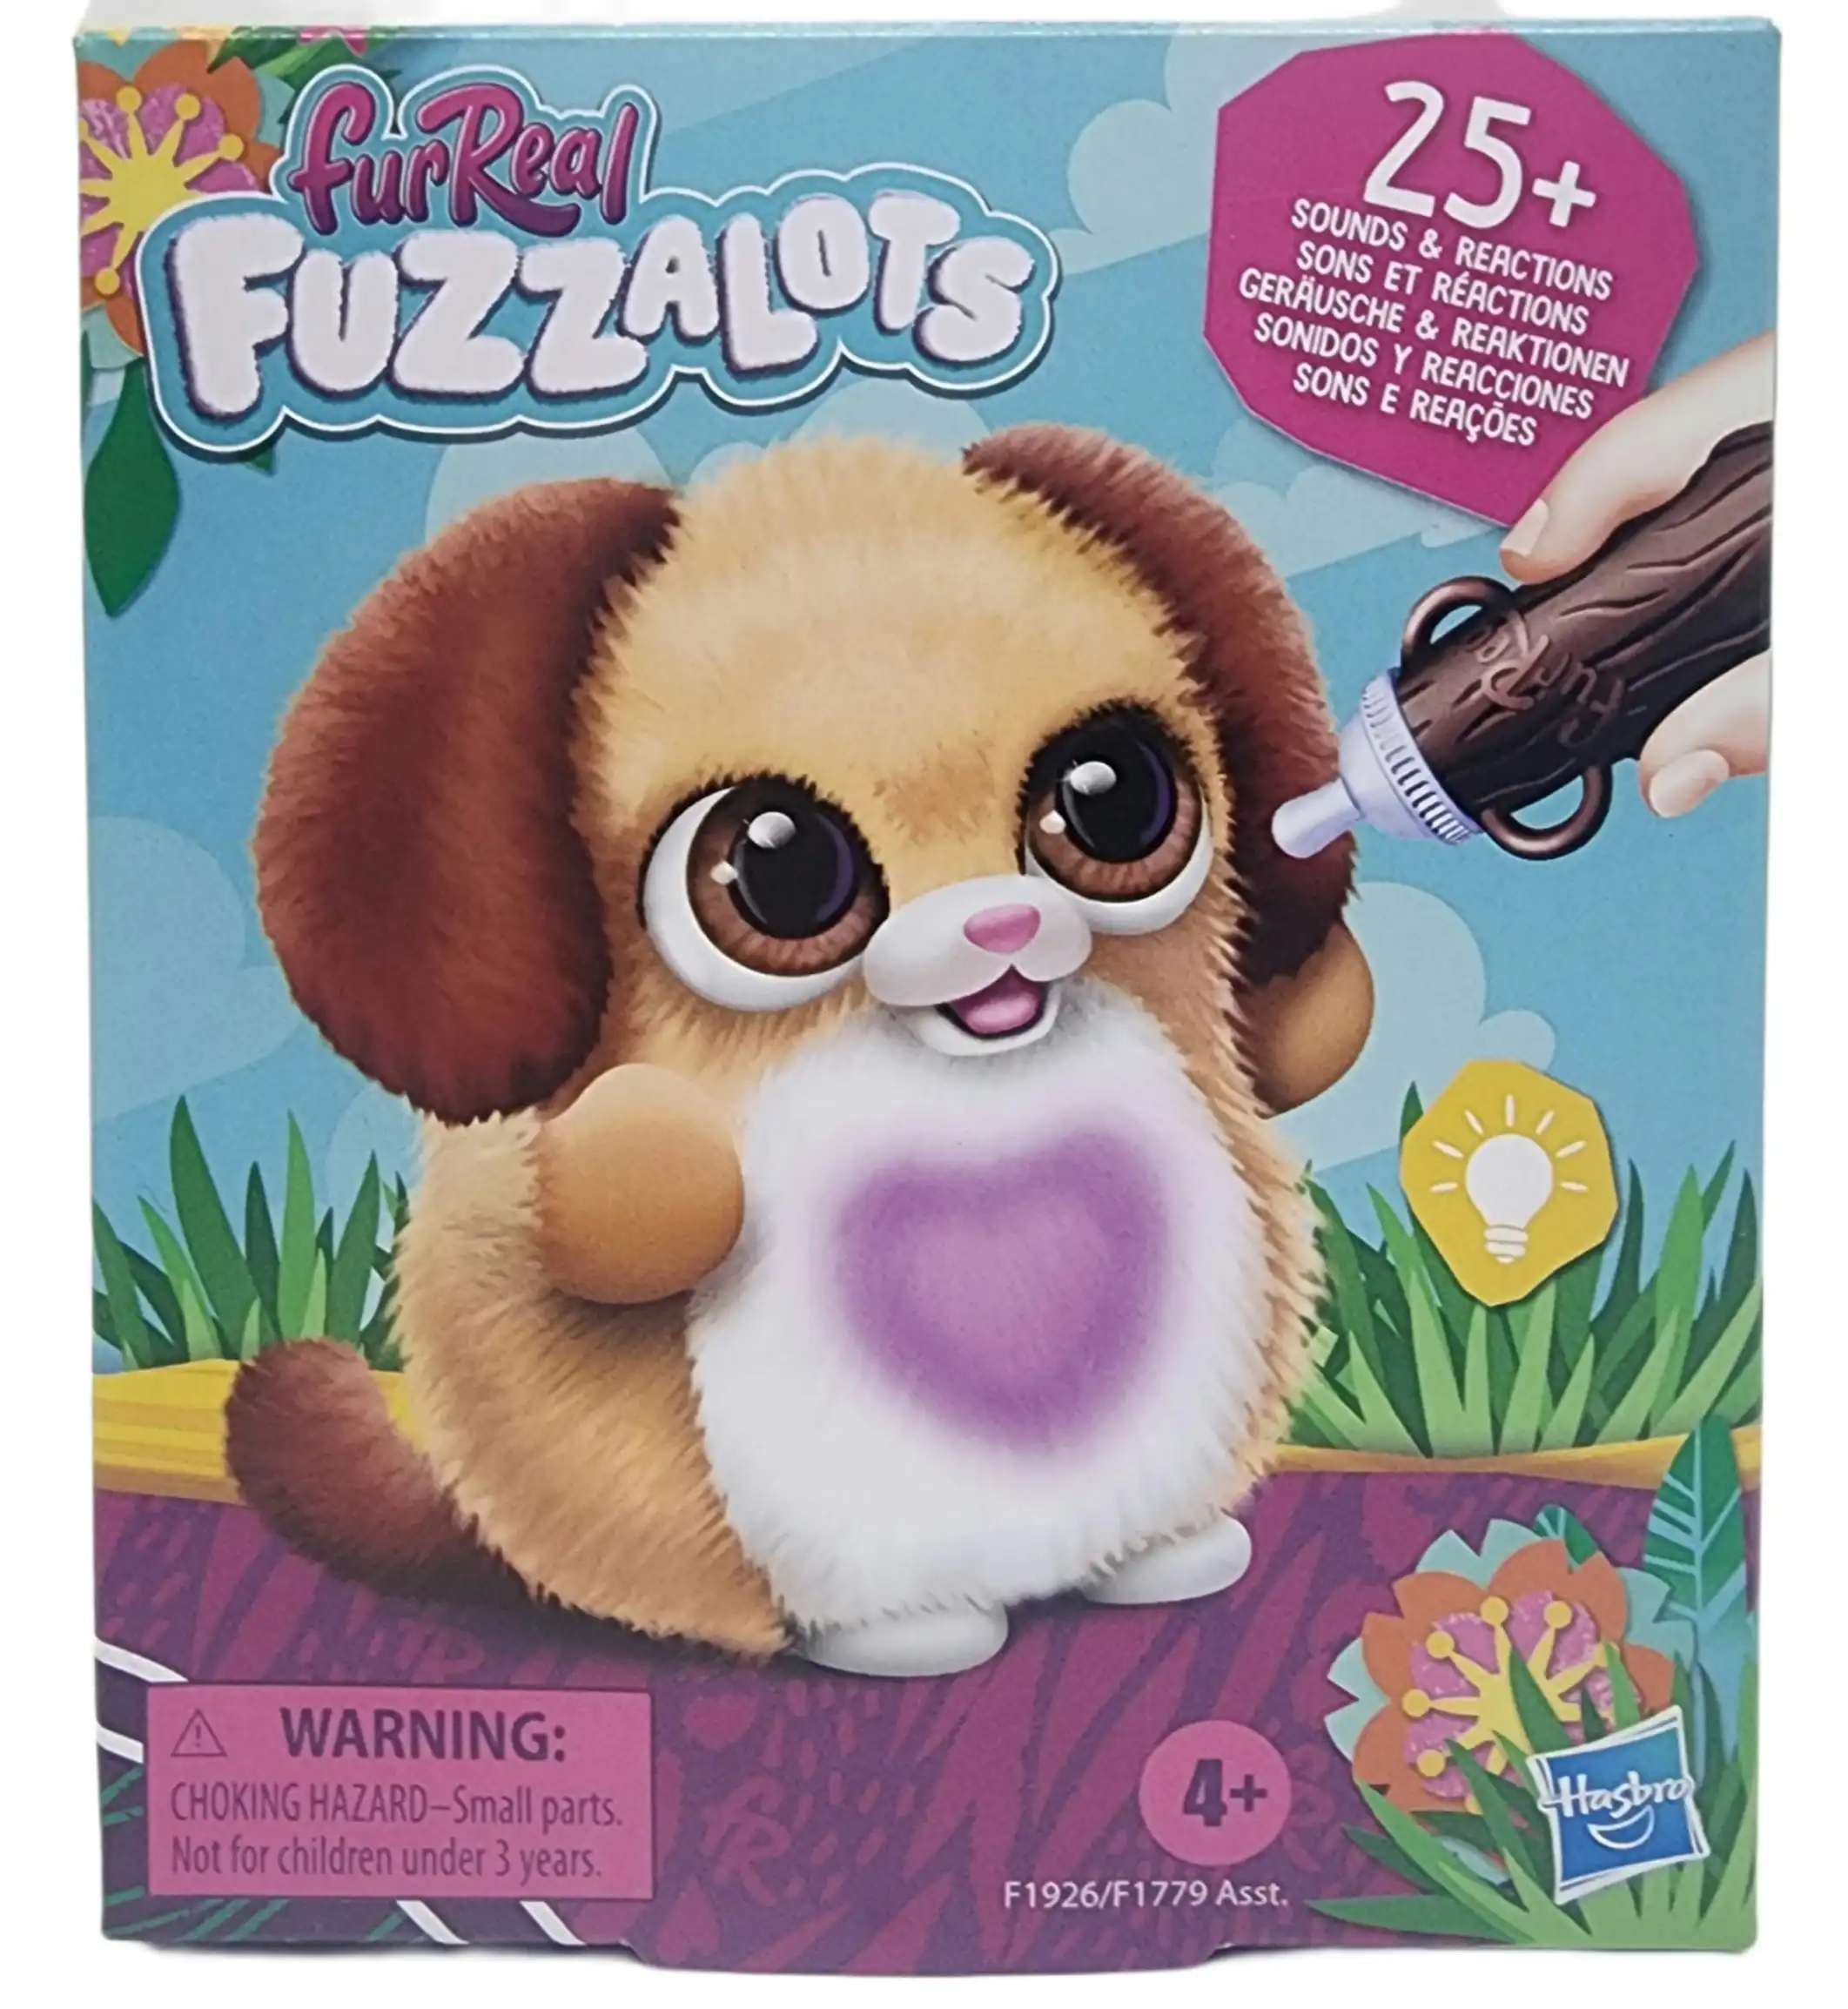 FurReal - Fuzzalots Puppy - Hasbro